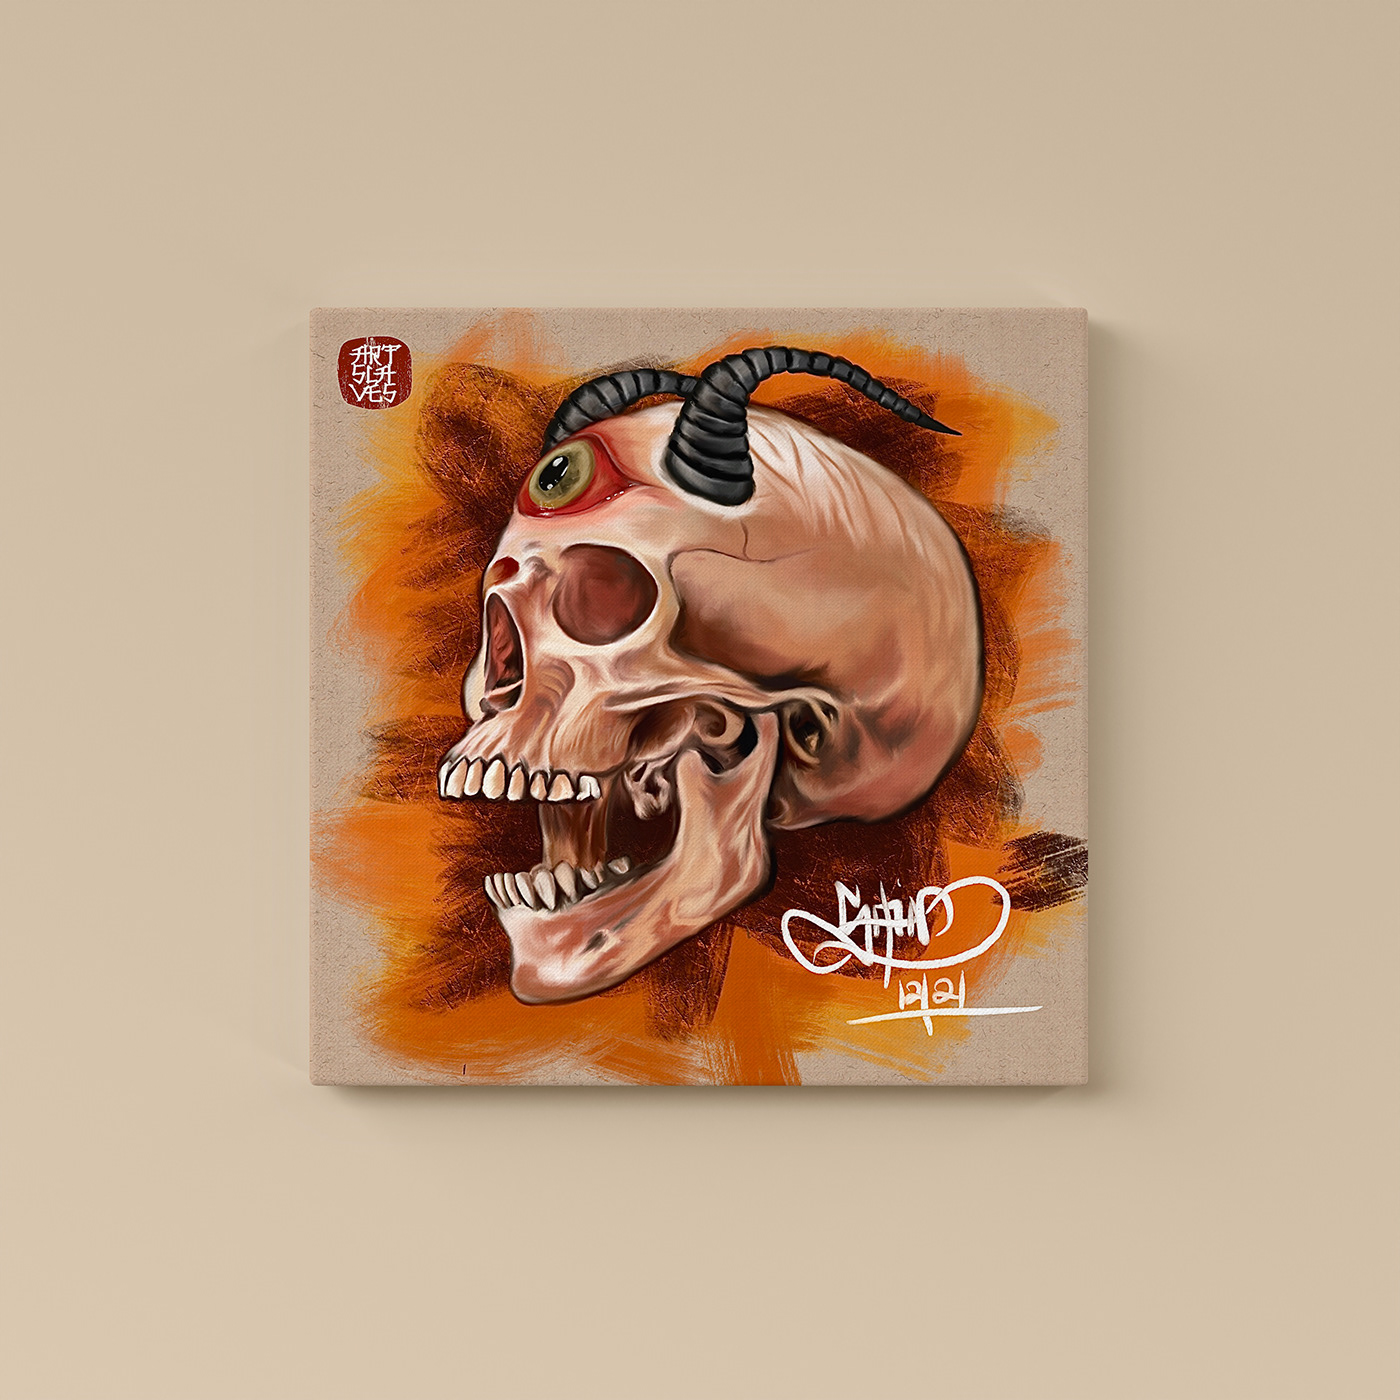 artwork digital illustration macabreart skull Skull art skullandbones skullart skullartwork skulls skullsketch